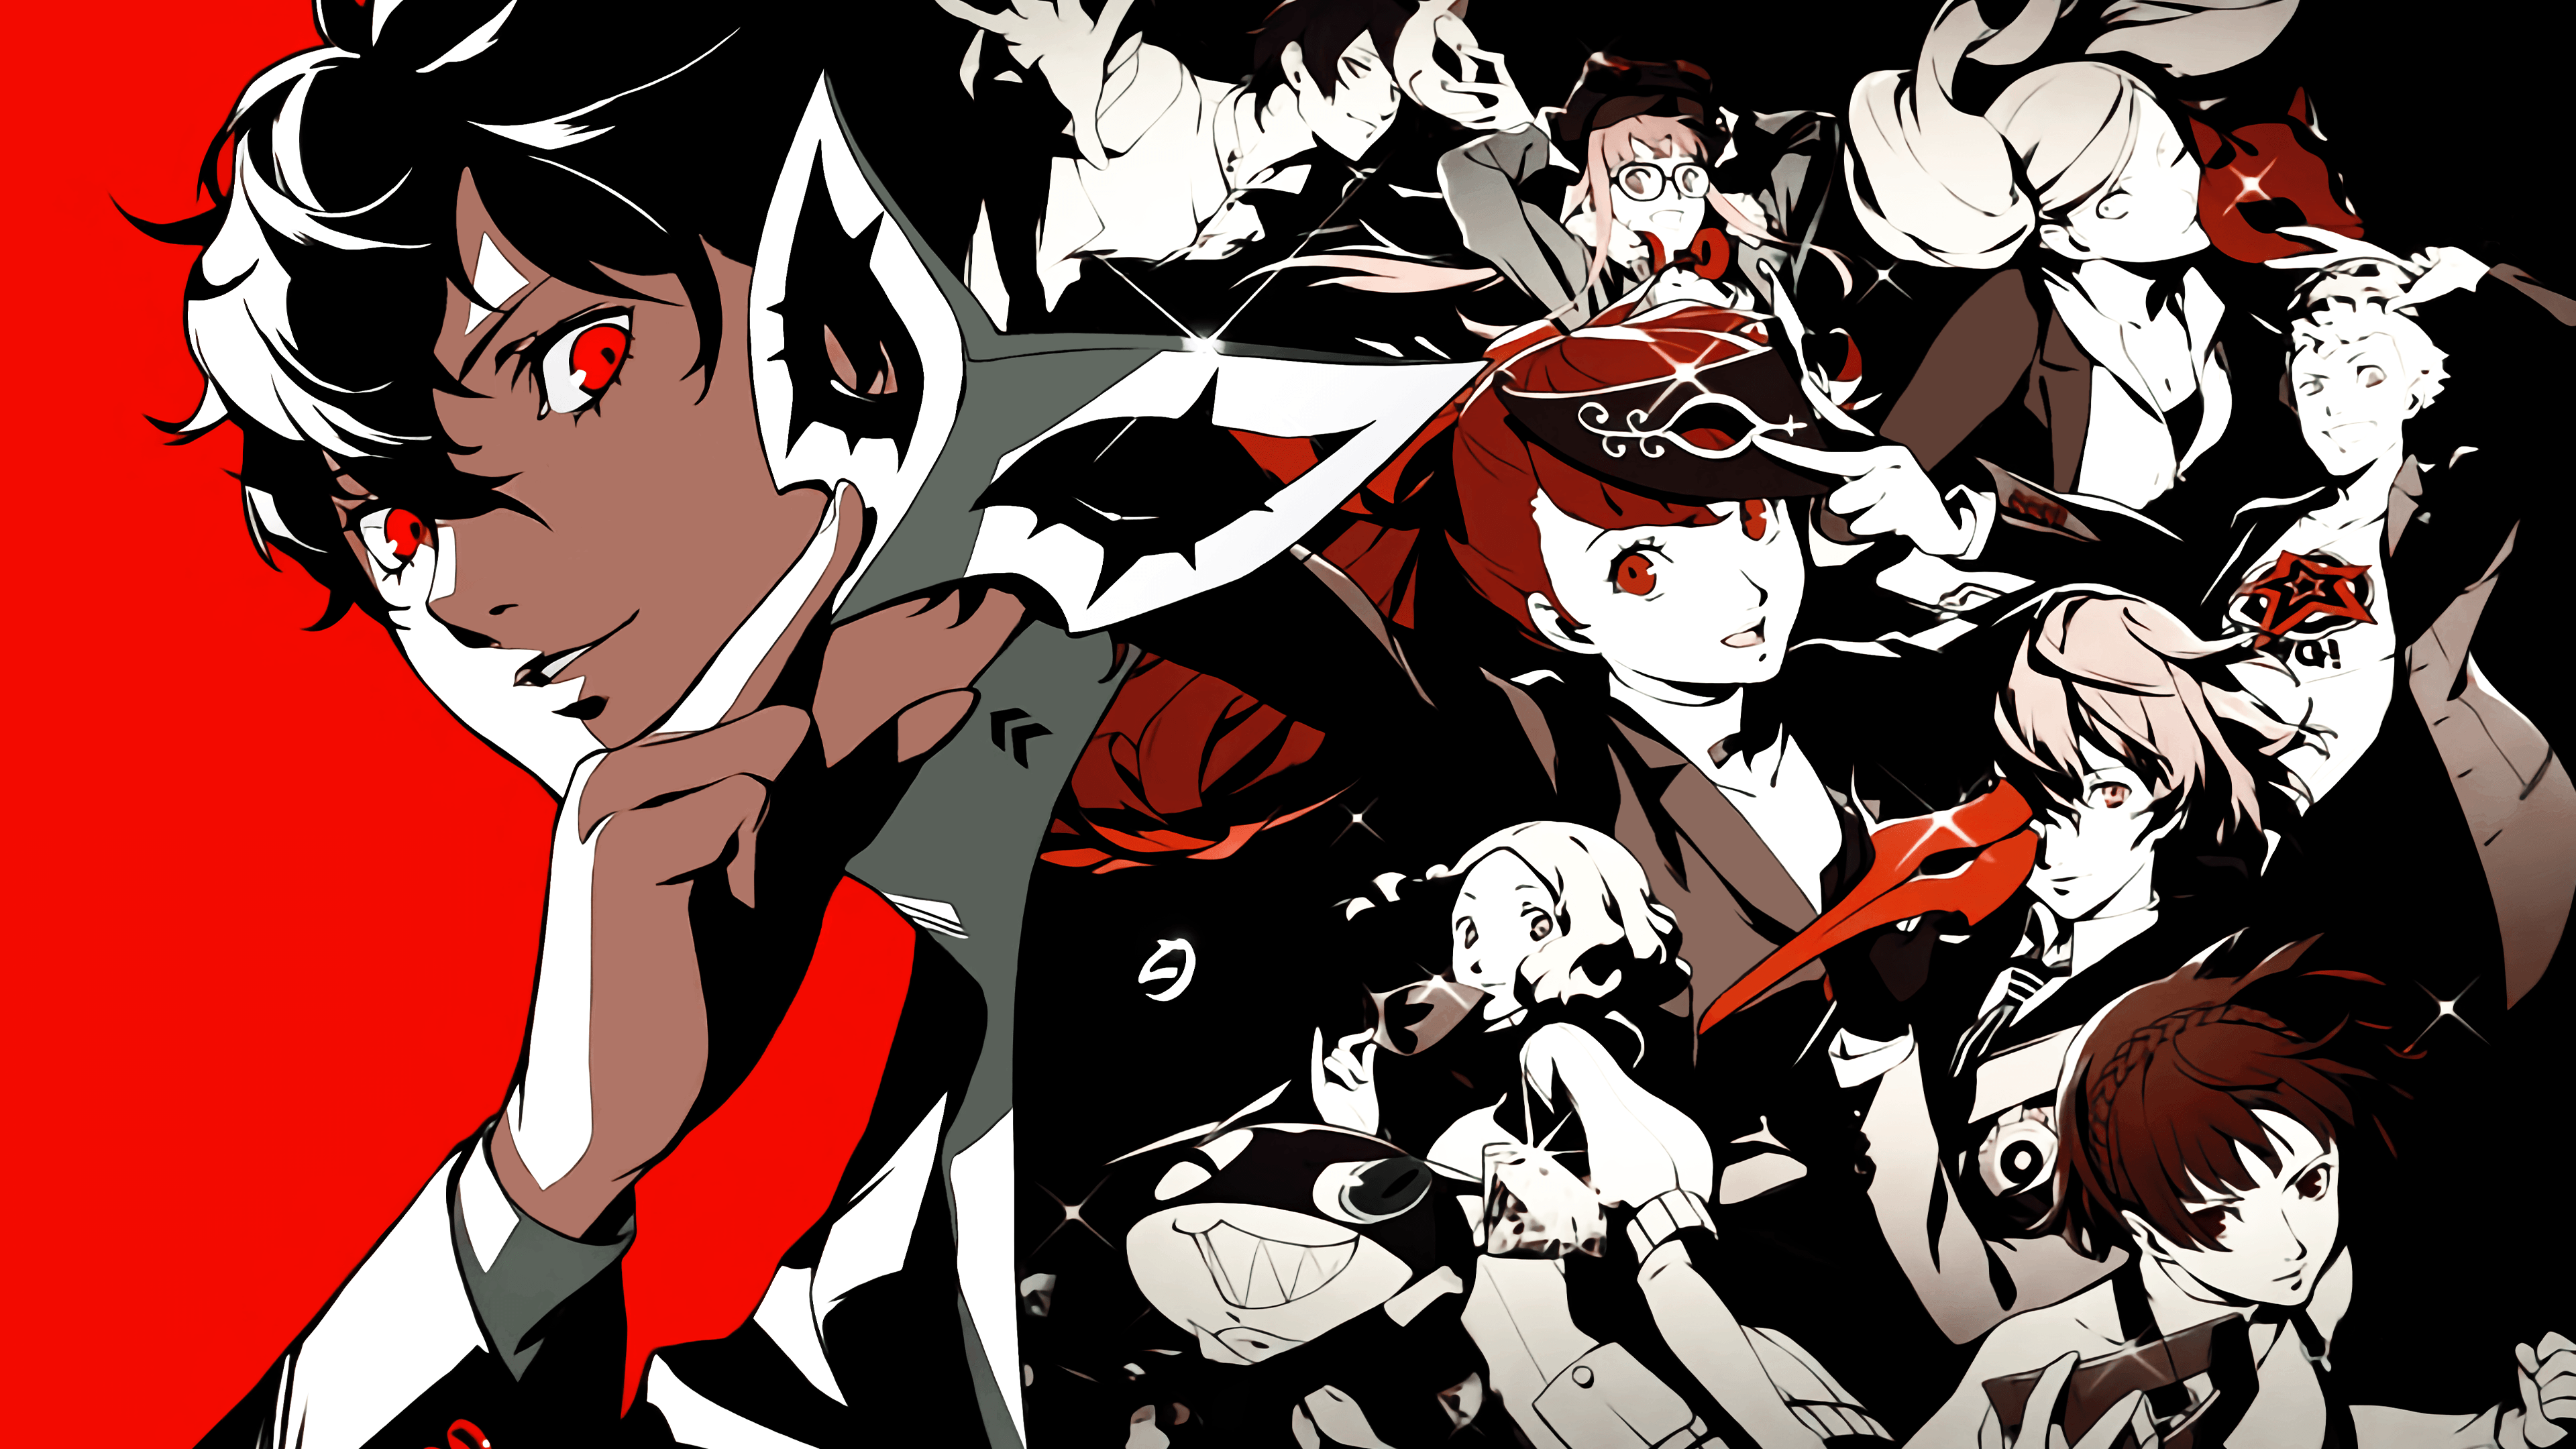 Persona 5 Anime Wallpaper